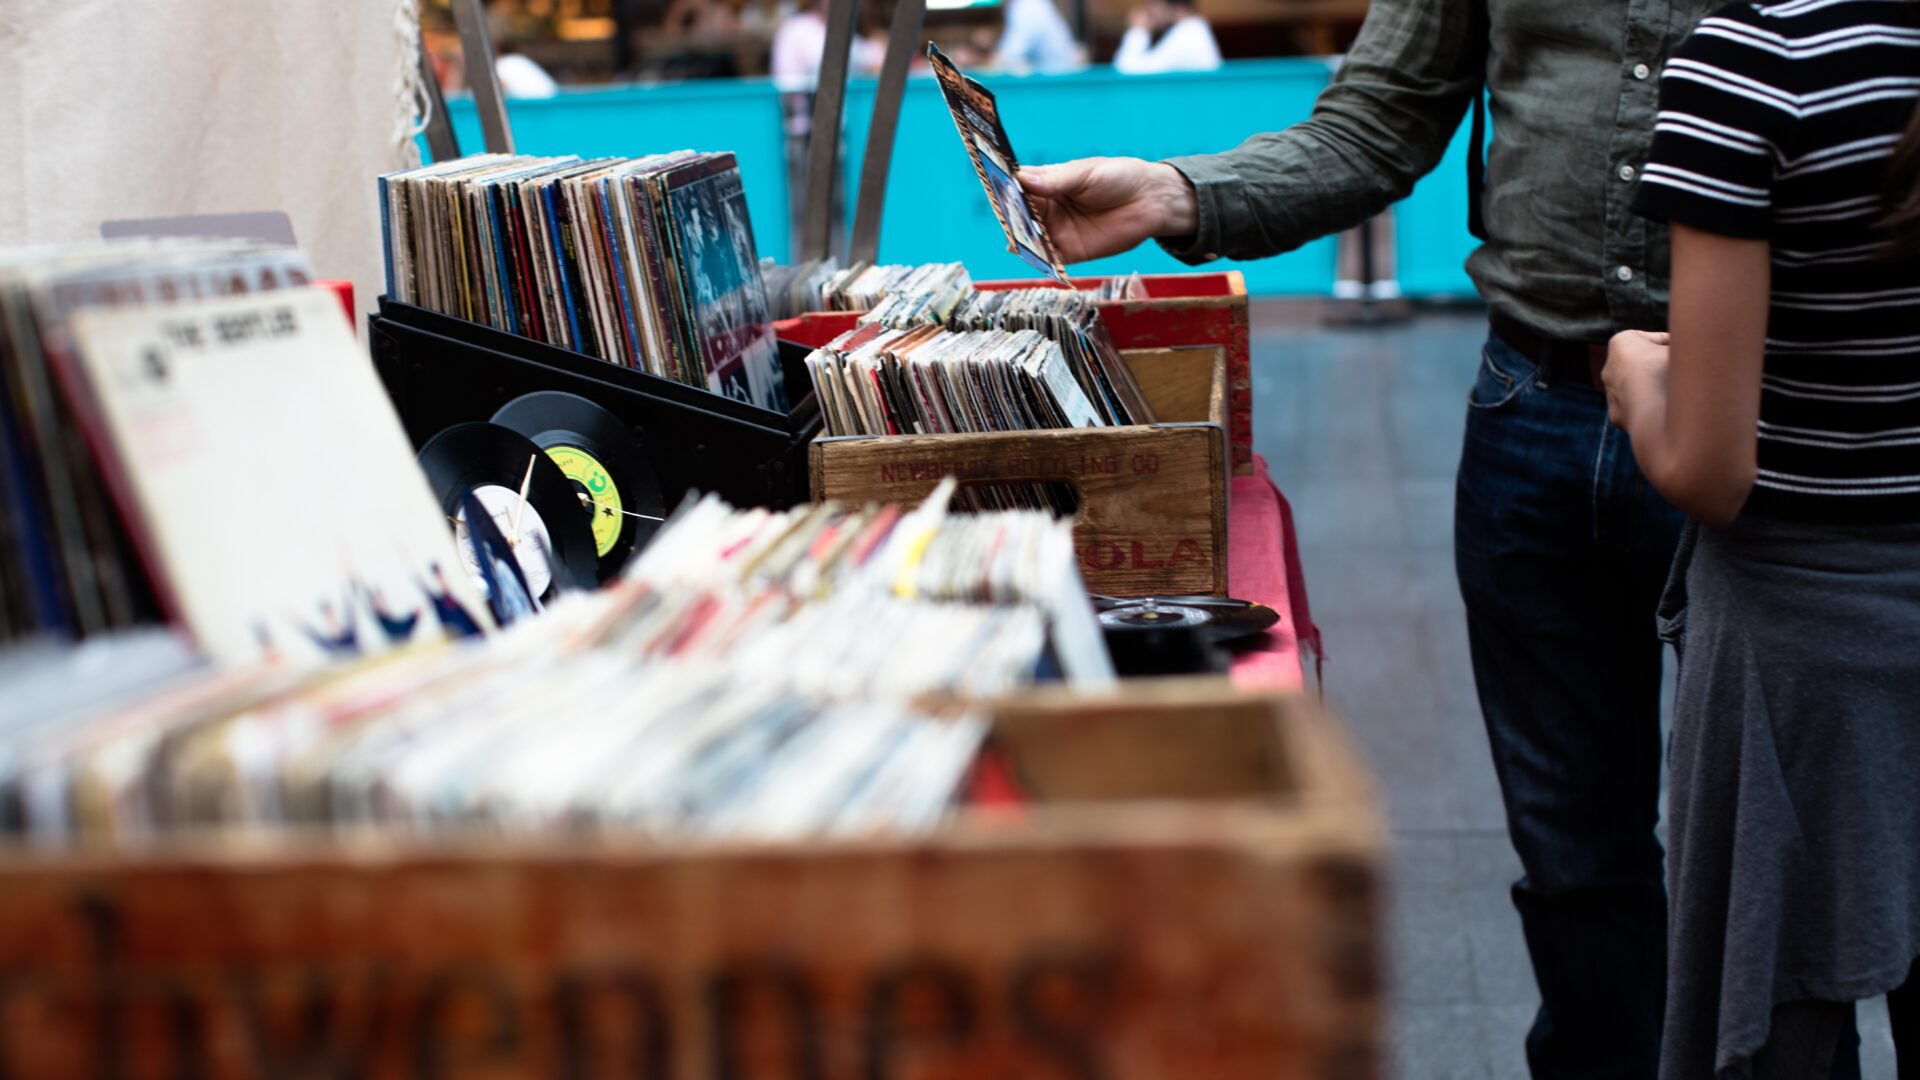 Decoratieve afbeelding van mensen die tussen vinylplaten kijken op een rommelmarkt